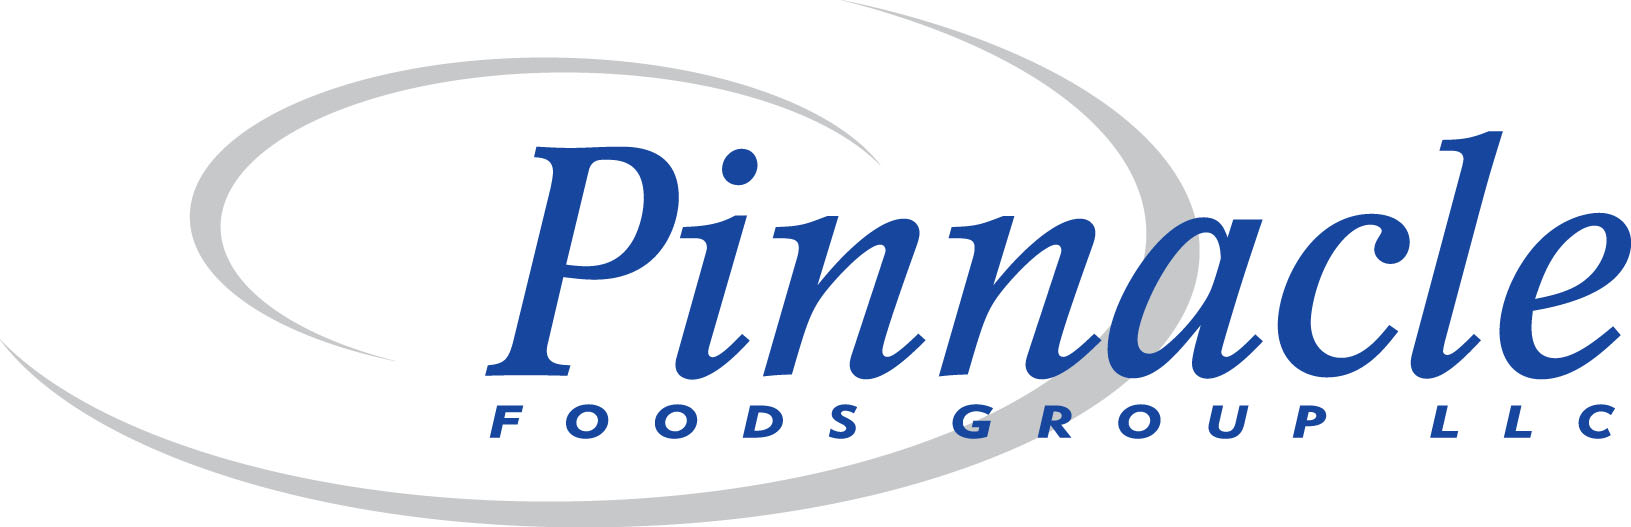 Pinnacle-Foods-Group-to-close-factory.jpg